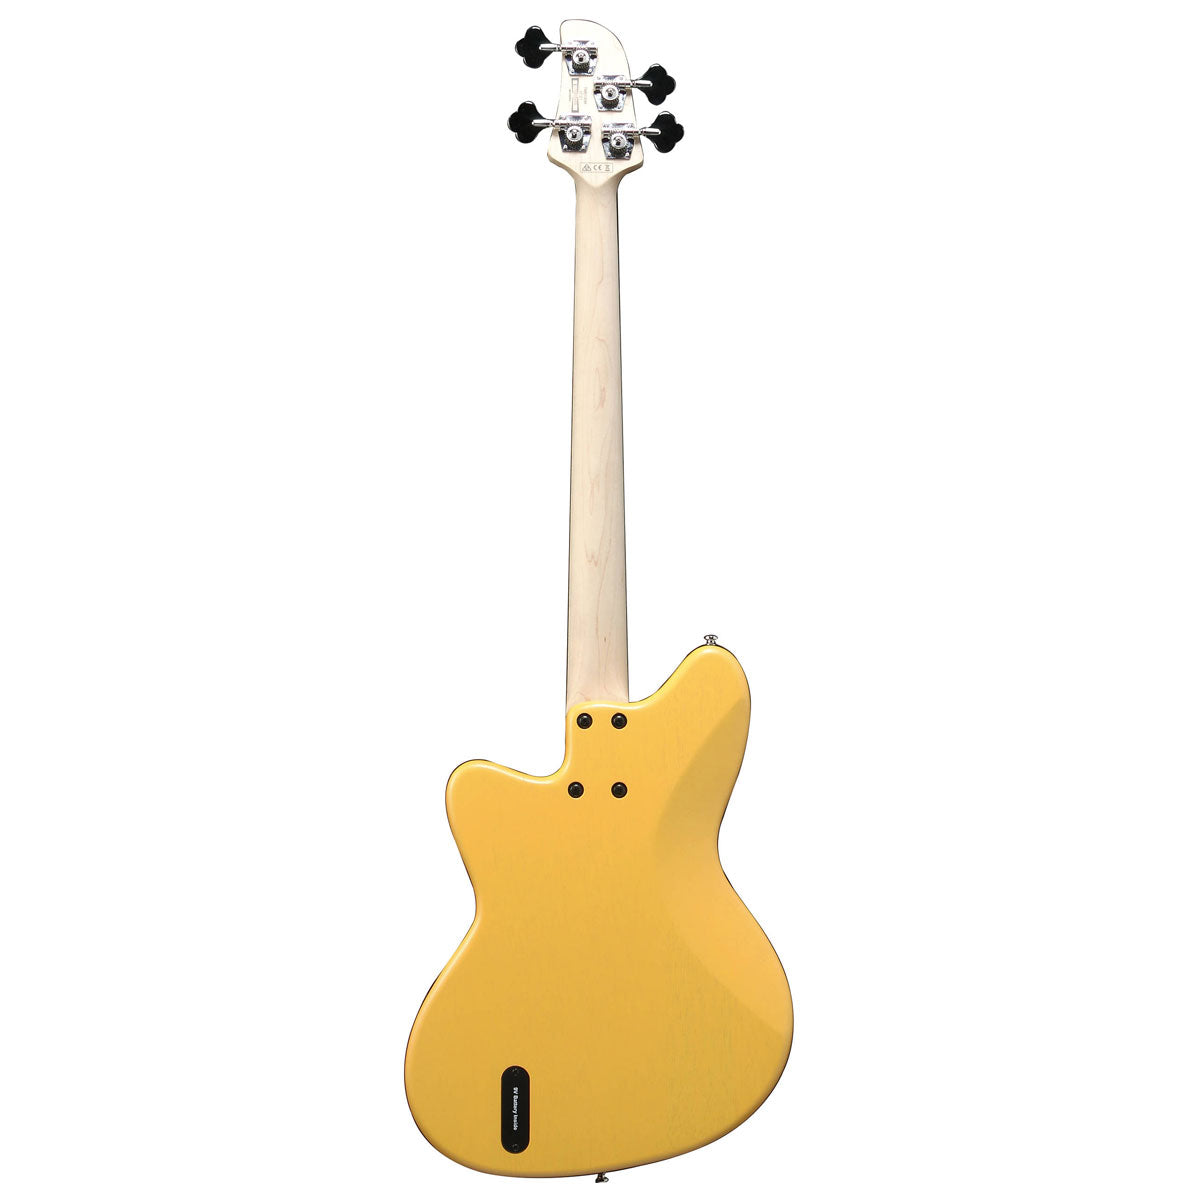 Ibanez TMB100M Talman Standard Series Bass Guitar - Mustard Yellow Flat